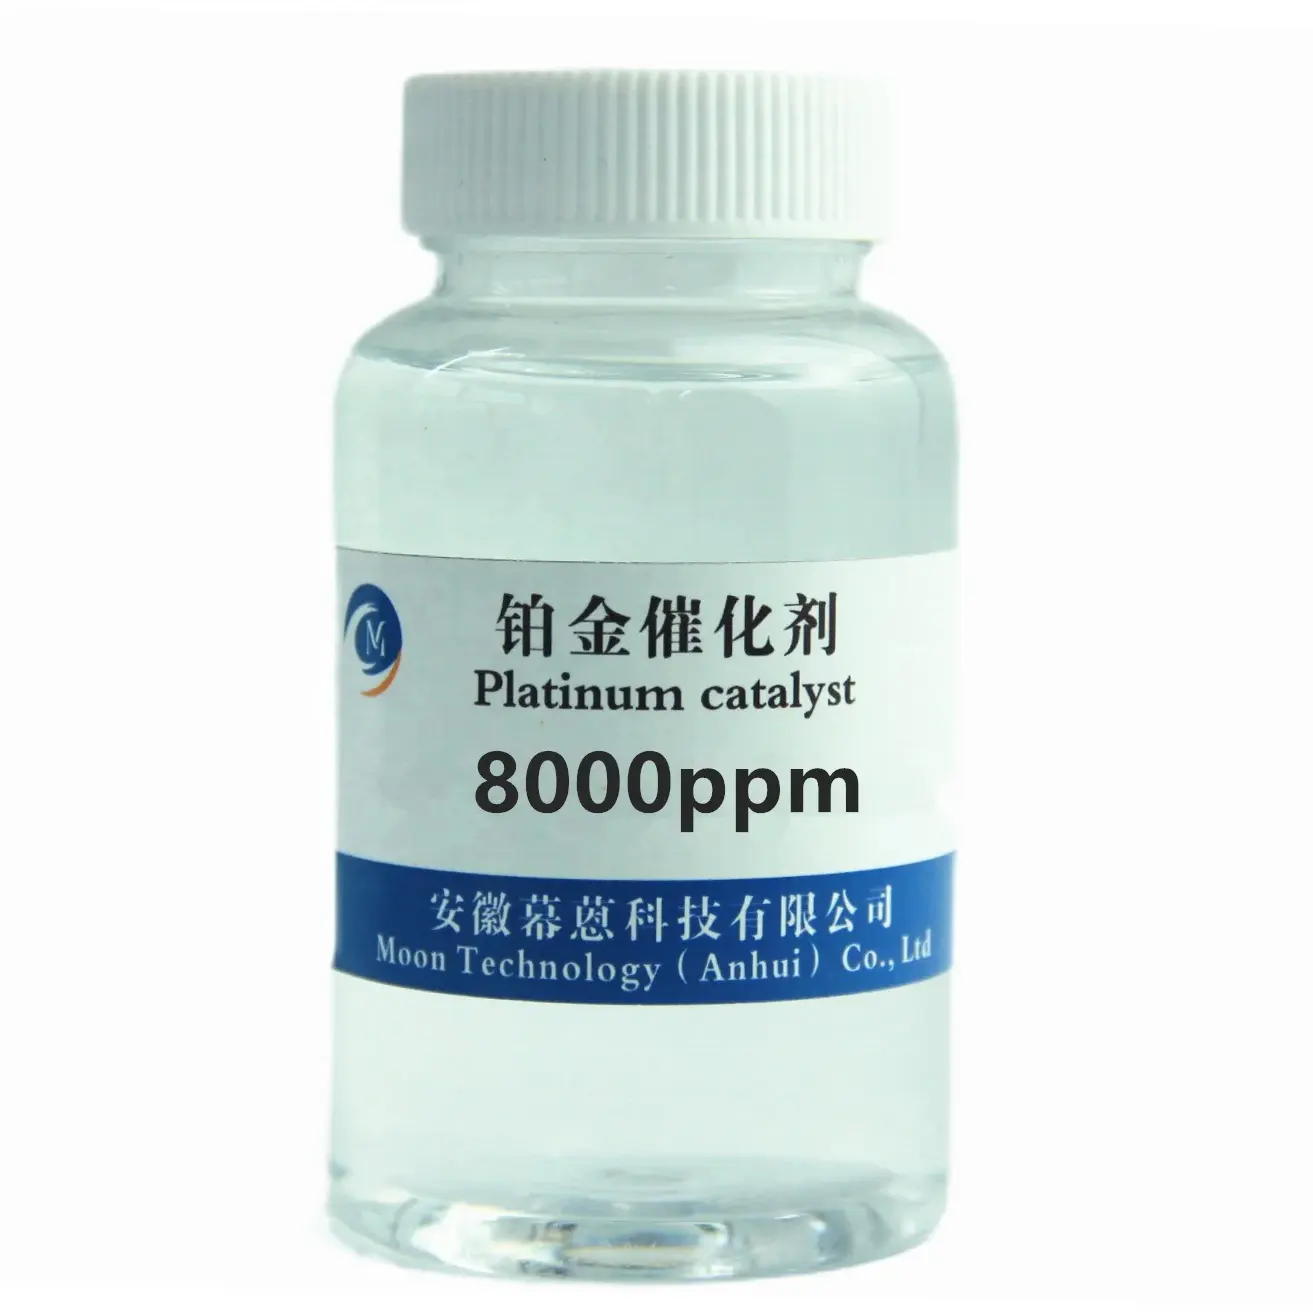 Agente de cura de silicone CAS 68478-92-2 para alimentos, alta eficiência catalítica de fábrica na China, catalisador de platina 200000ppm pdms